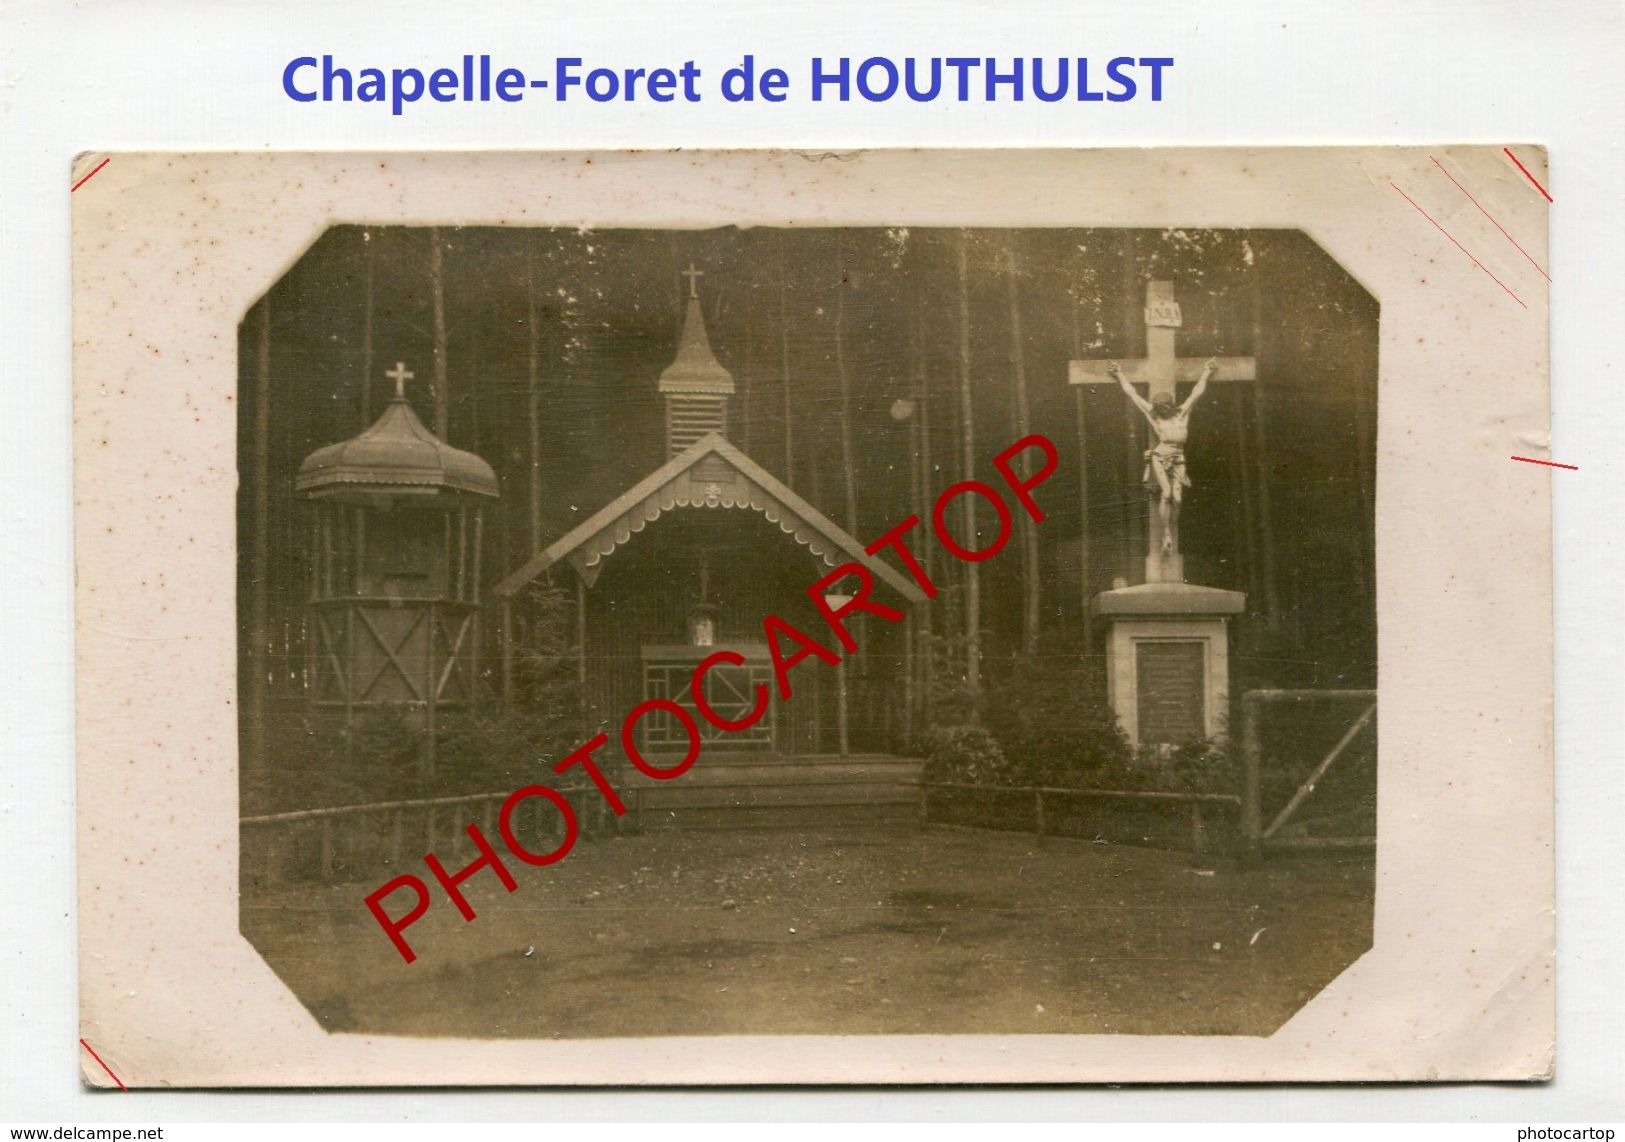 Chapelle-Foret De HOUTHULST-CARTE PHOTO Allemande-Guerre 14-18-1 WK-BELGIEN-Flandern - Houthulst